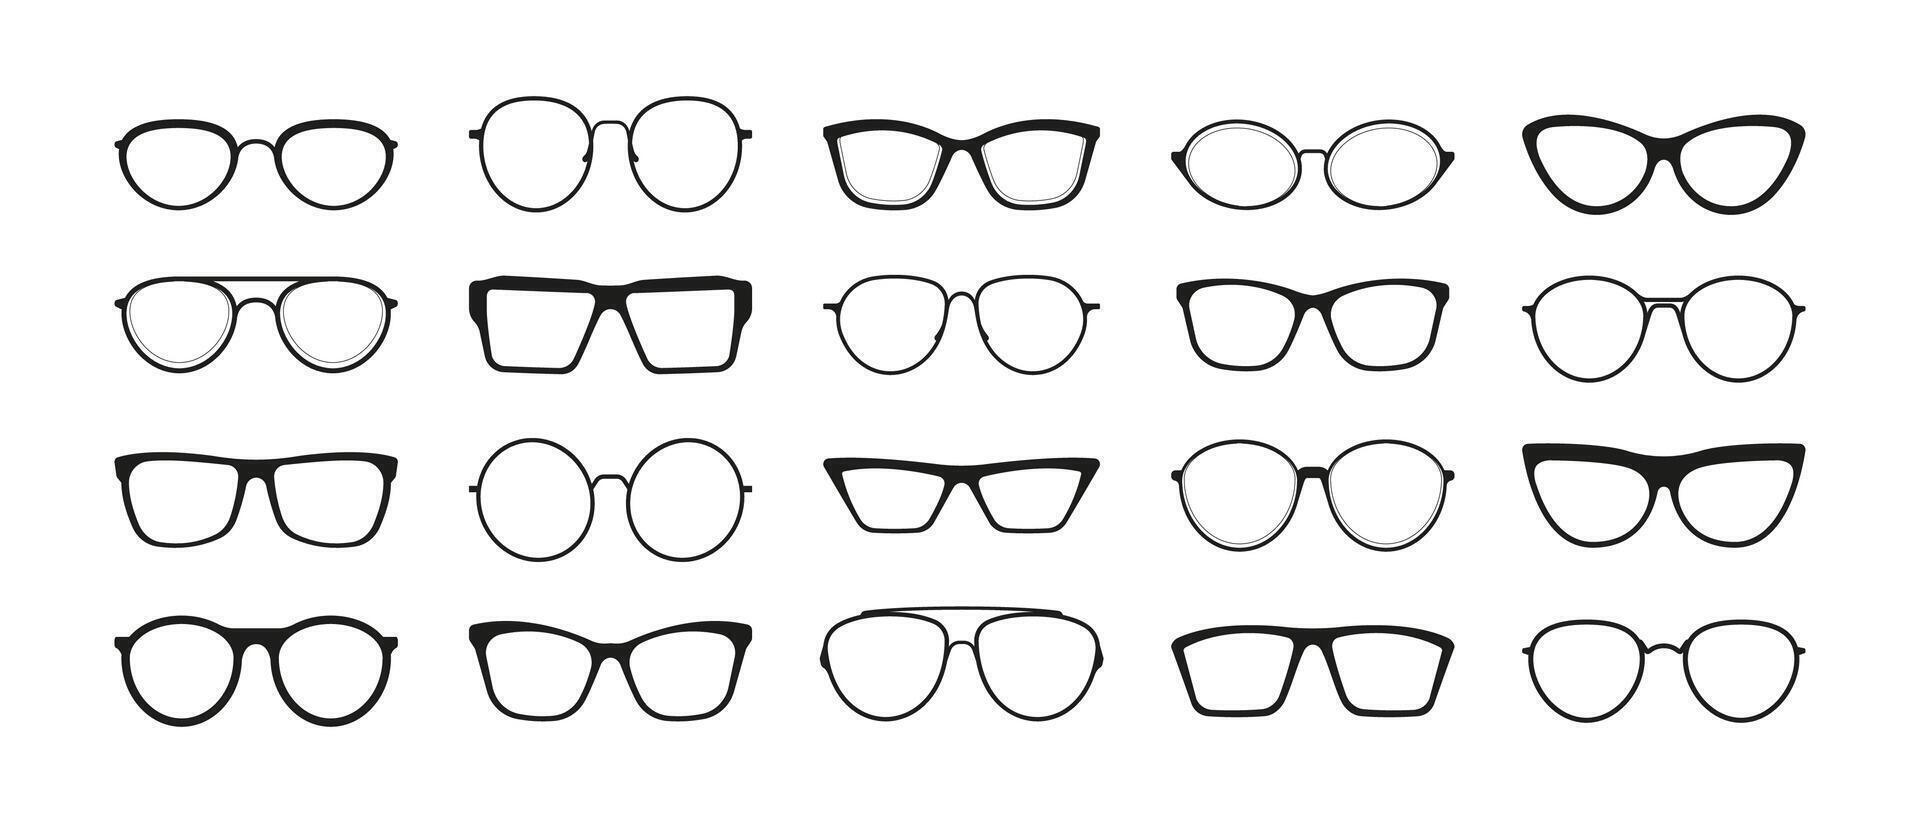 des lunettes de soleil jante. mode des lunettes Cadre différent formes, noir Facile monocle silhouettes collection, vue se soucier concept. vecteur isolé ensemble